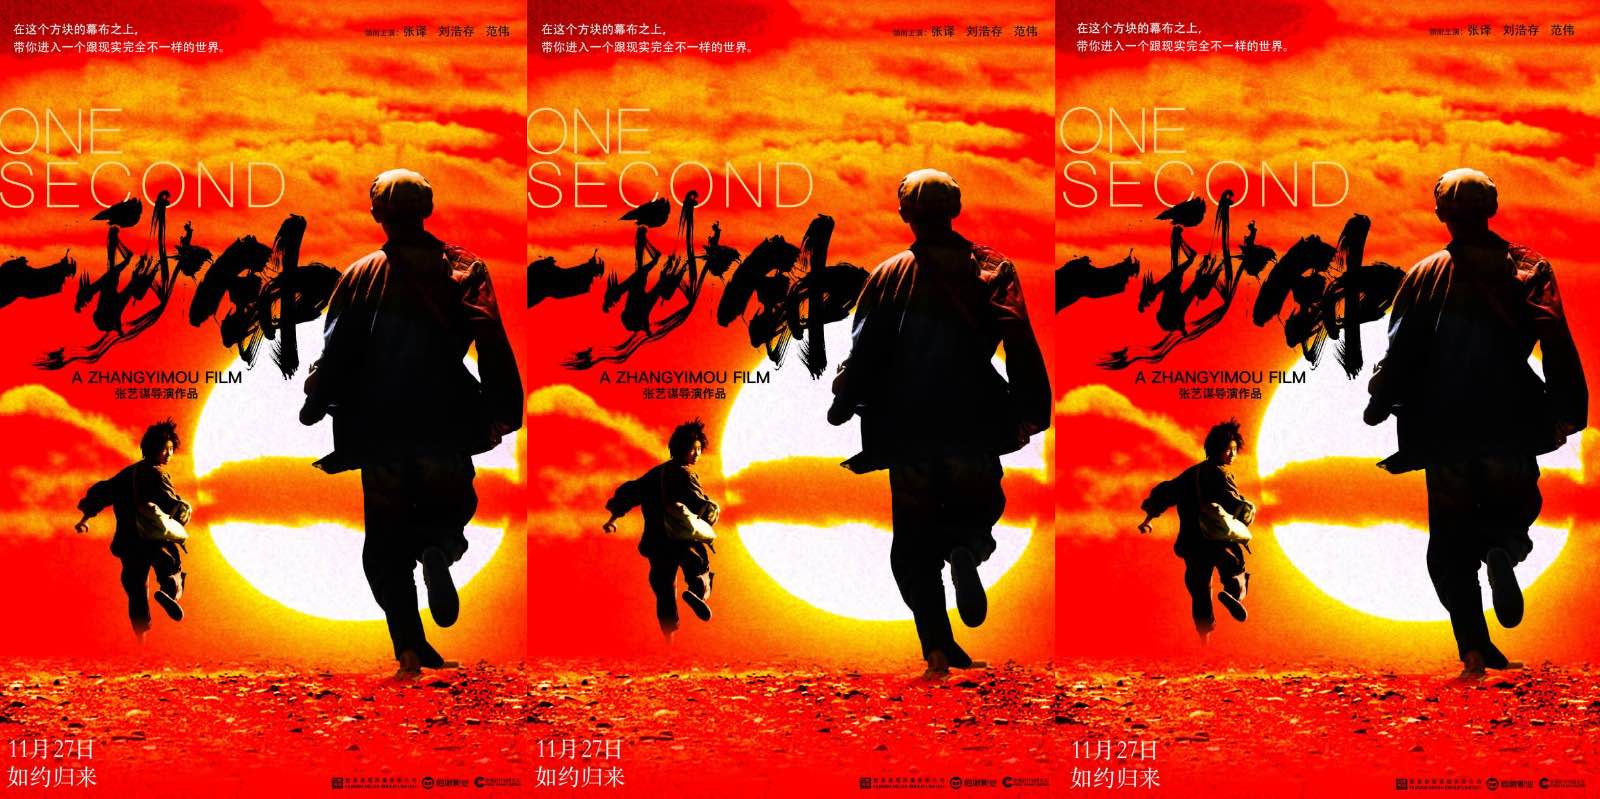 《一秒钟》发布“电影的情书”版海报 张艺谋携手黄海追溯电影记忆